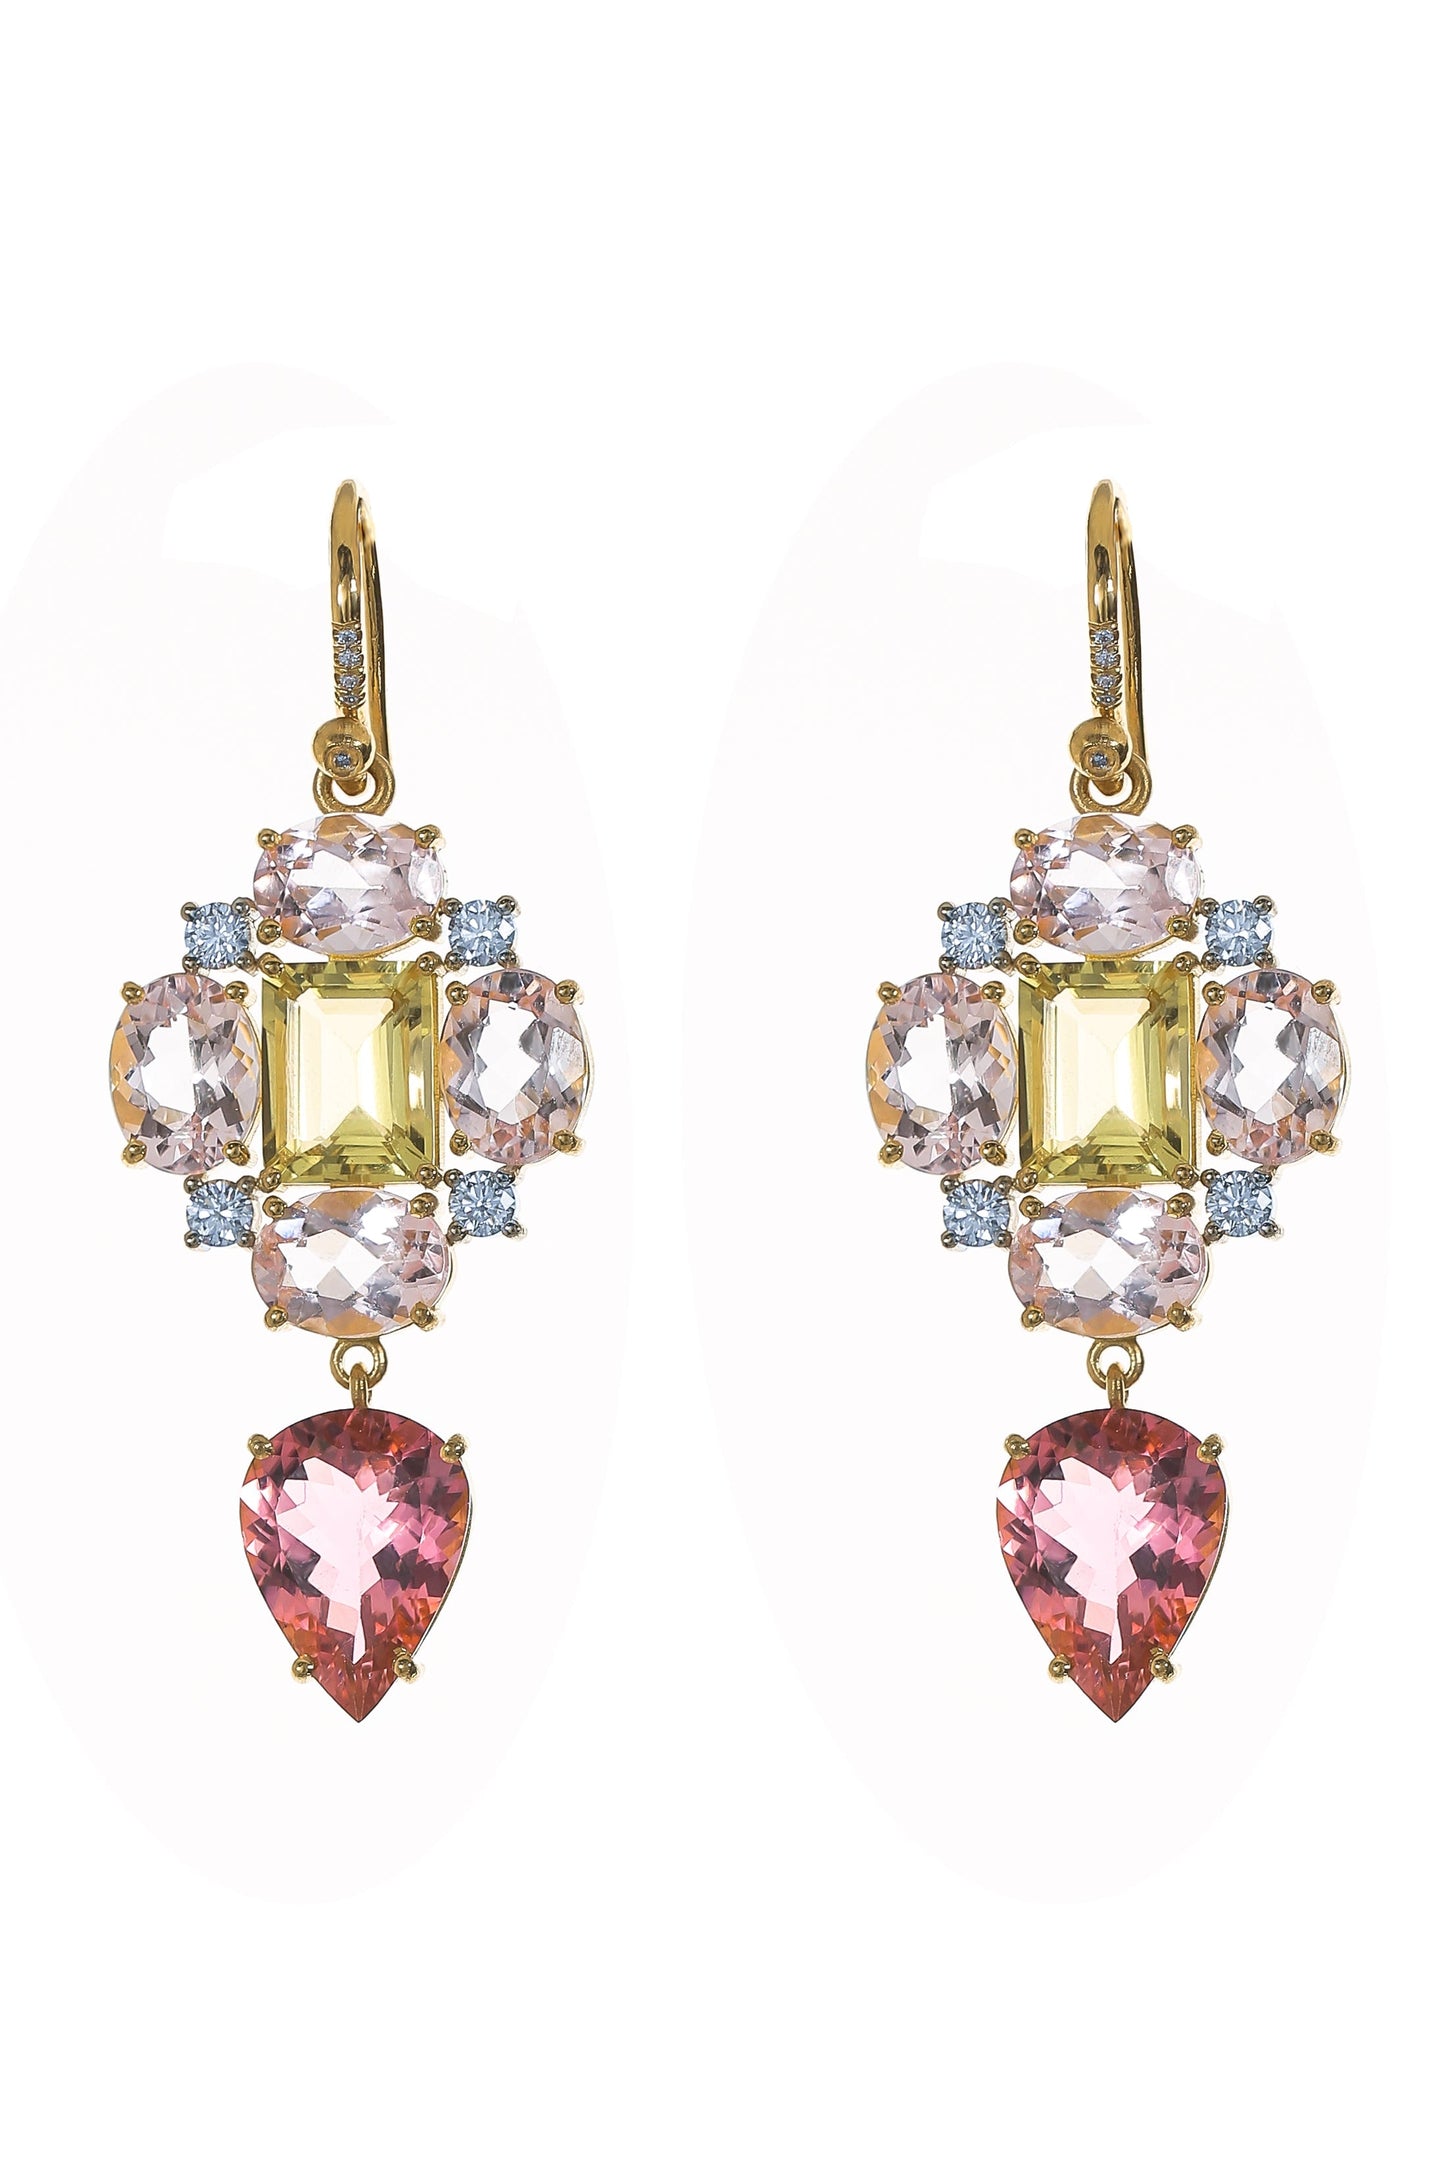 IRENE NEUWIRTH JEWELRY-Gemmy Gem Morganite Pink Tourmaline Earrings-YELLOW GOLD